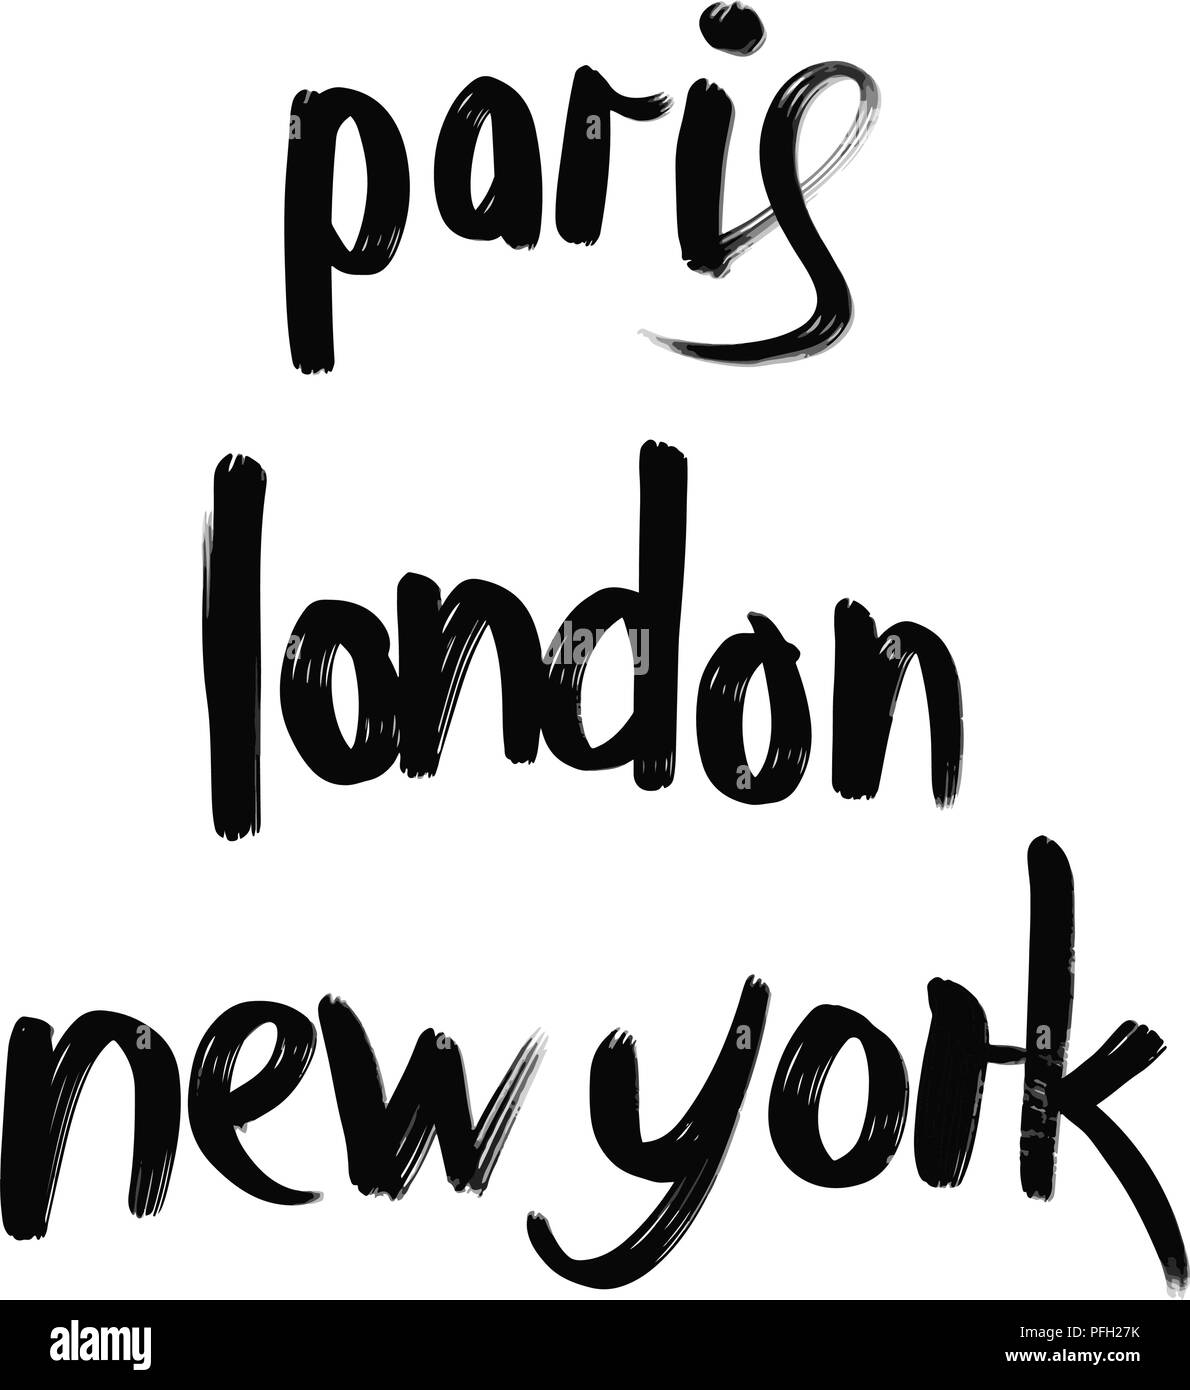 Paris, London, New York Schriftzug. Hand gezeichnet typografische Gestaltung für Grußkarten und jede Art von Werbung. Stock Vektor